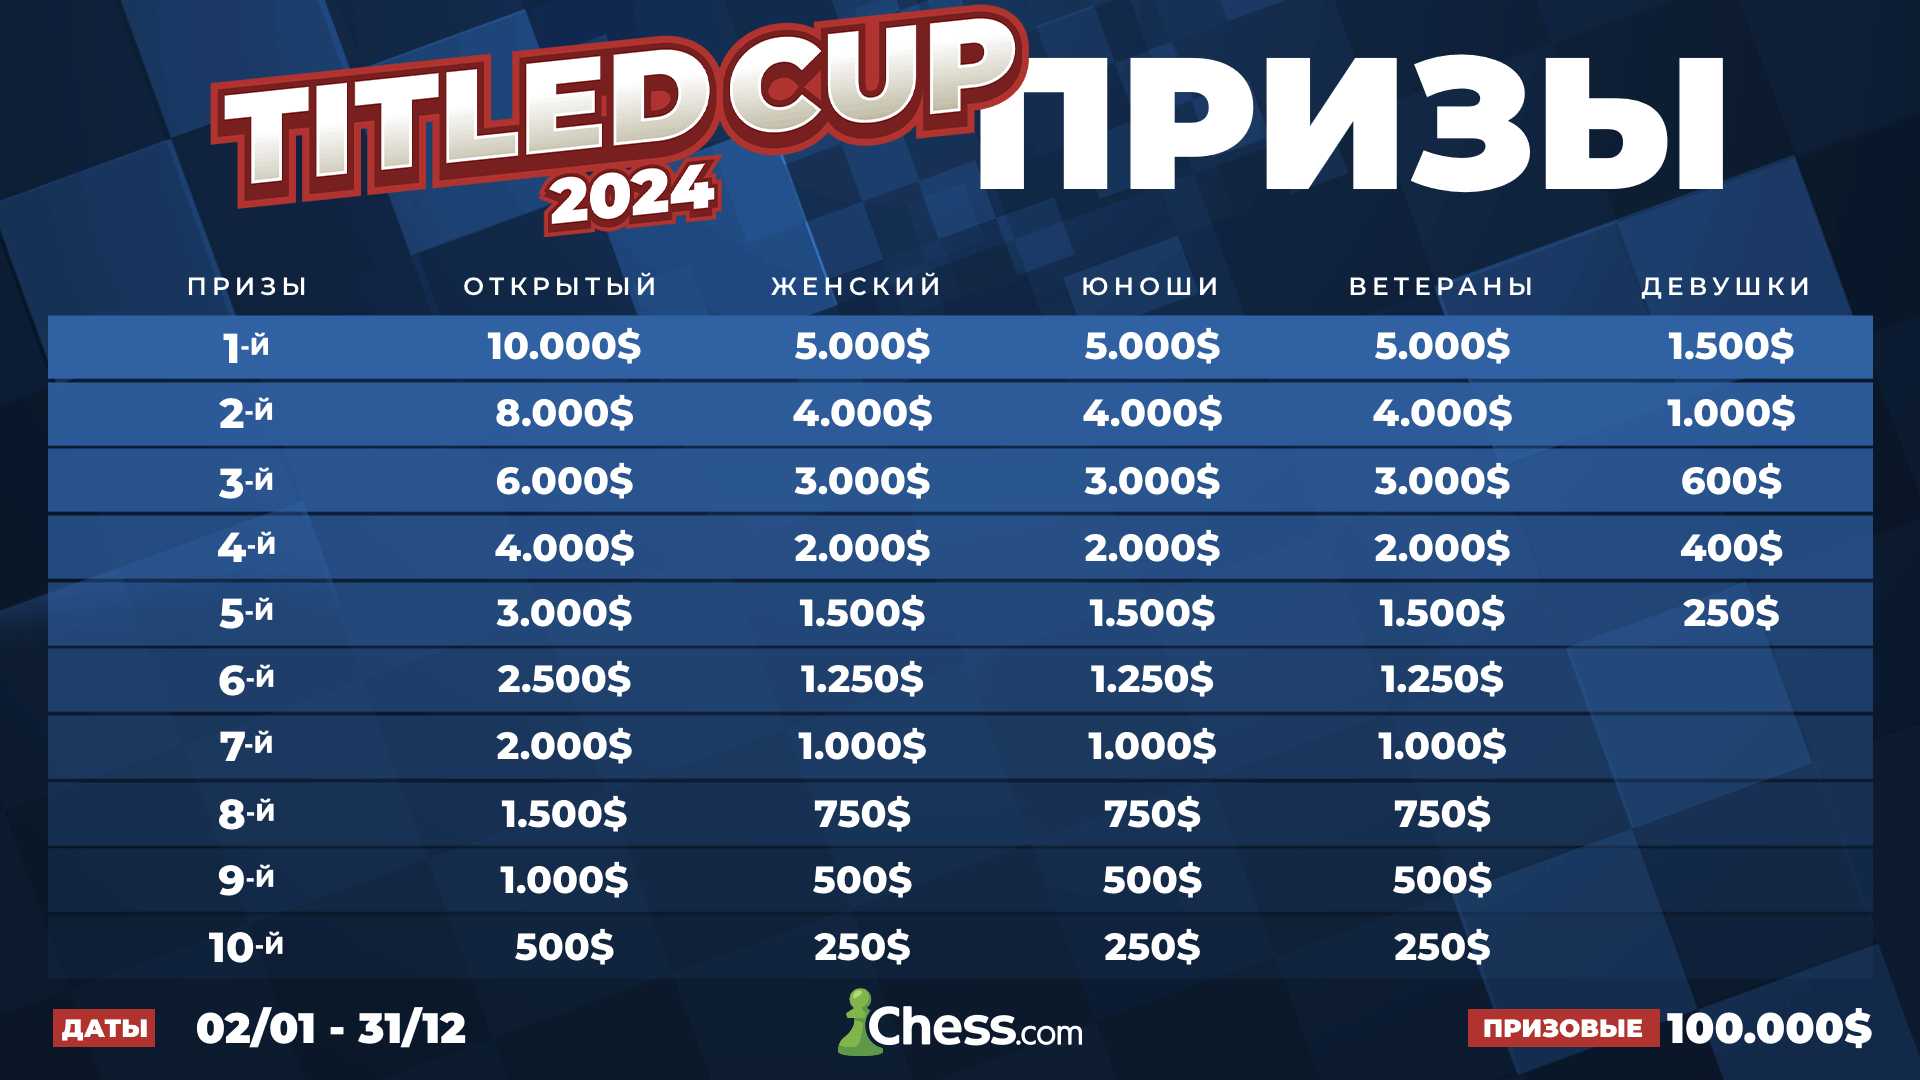 Титульный кубок 2024: новая серия турниров на Chess.com - Chess.com